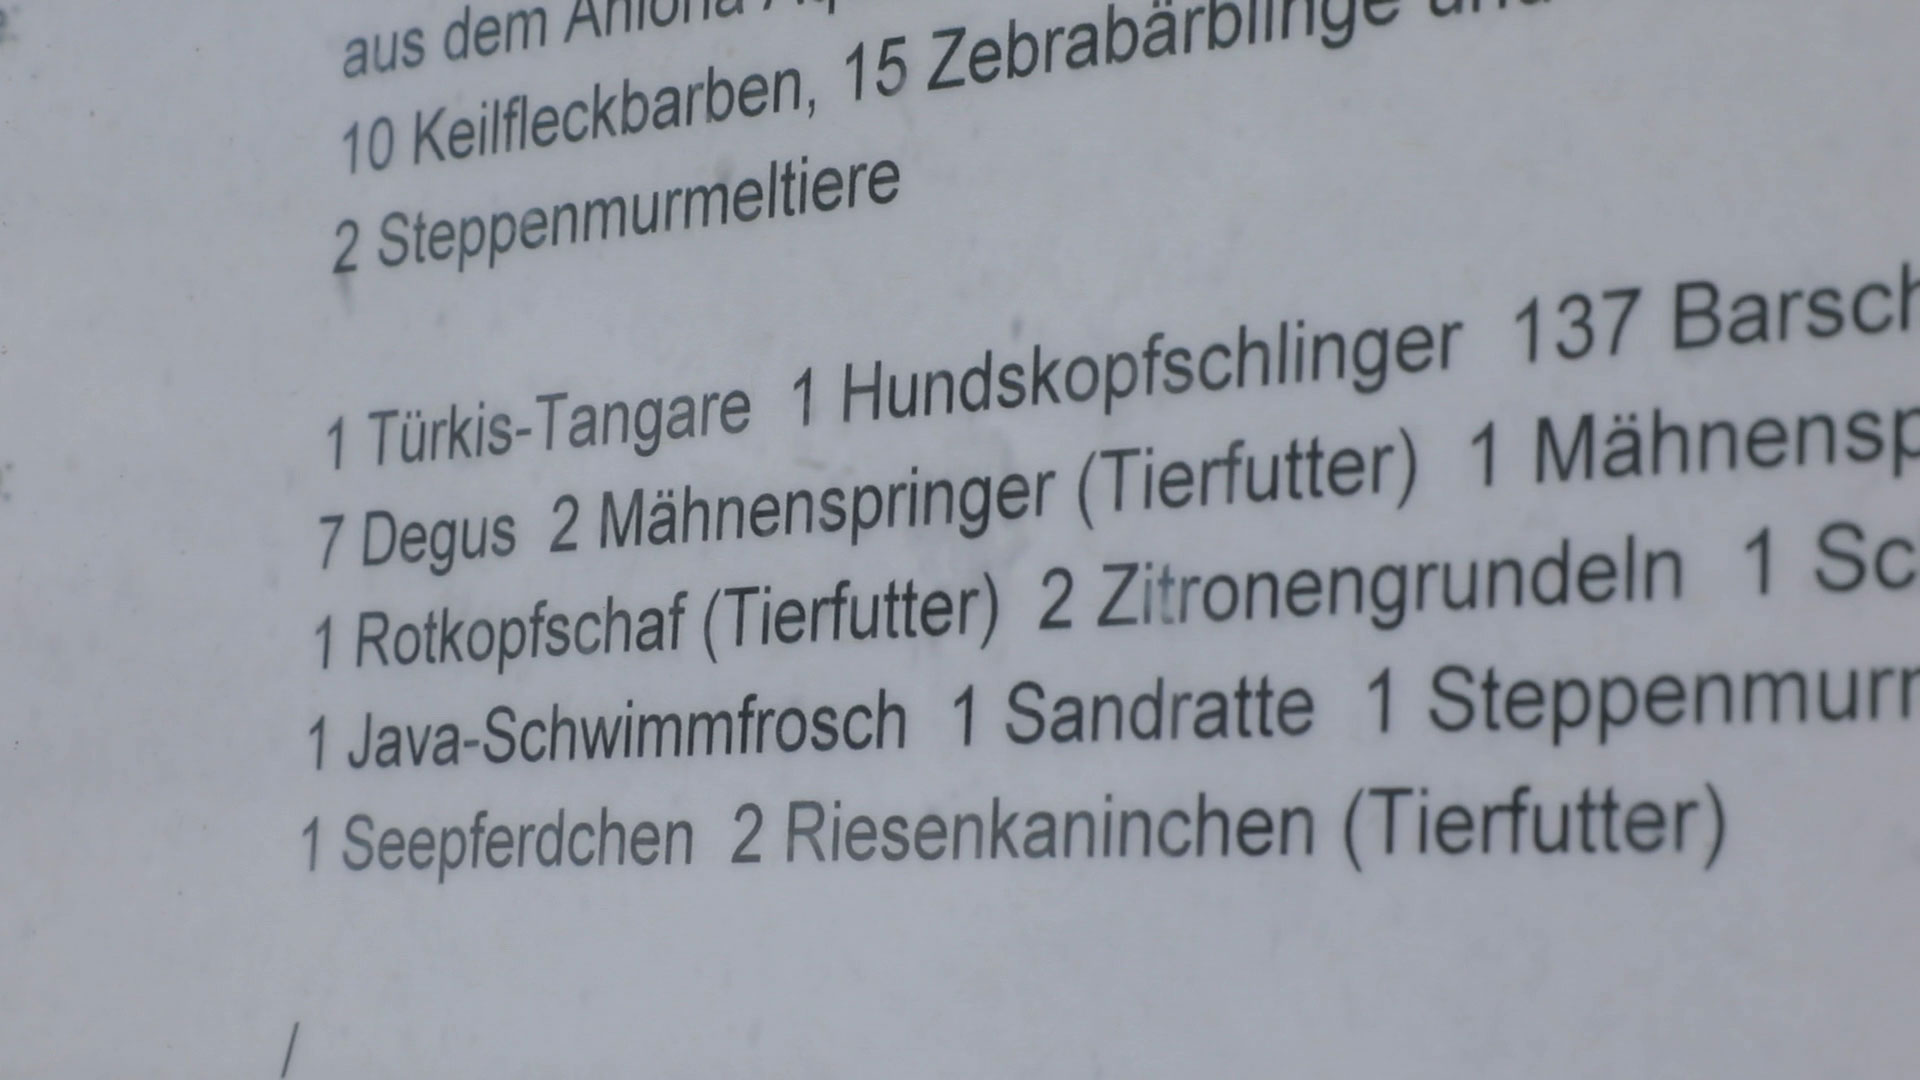 Liste mit verfütterten Tieren im Nürnberger Zoo